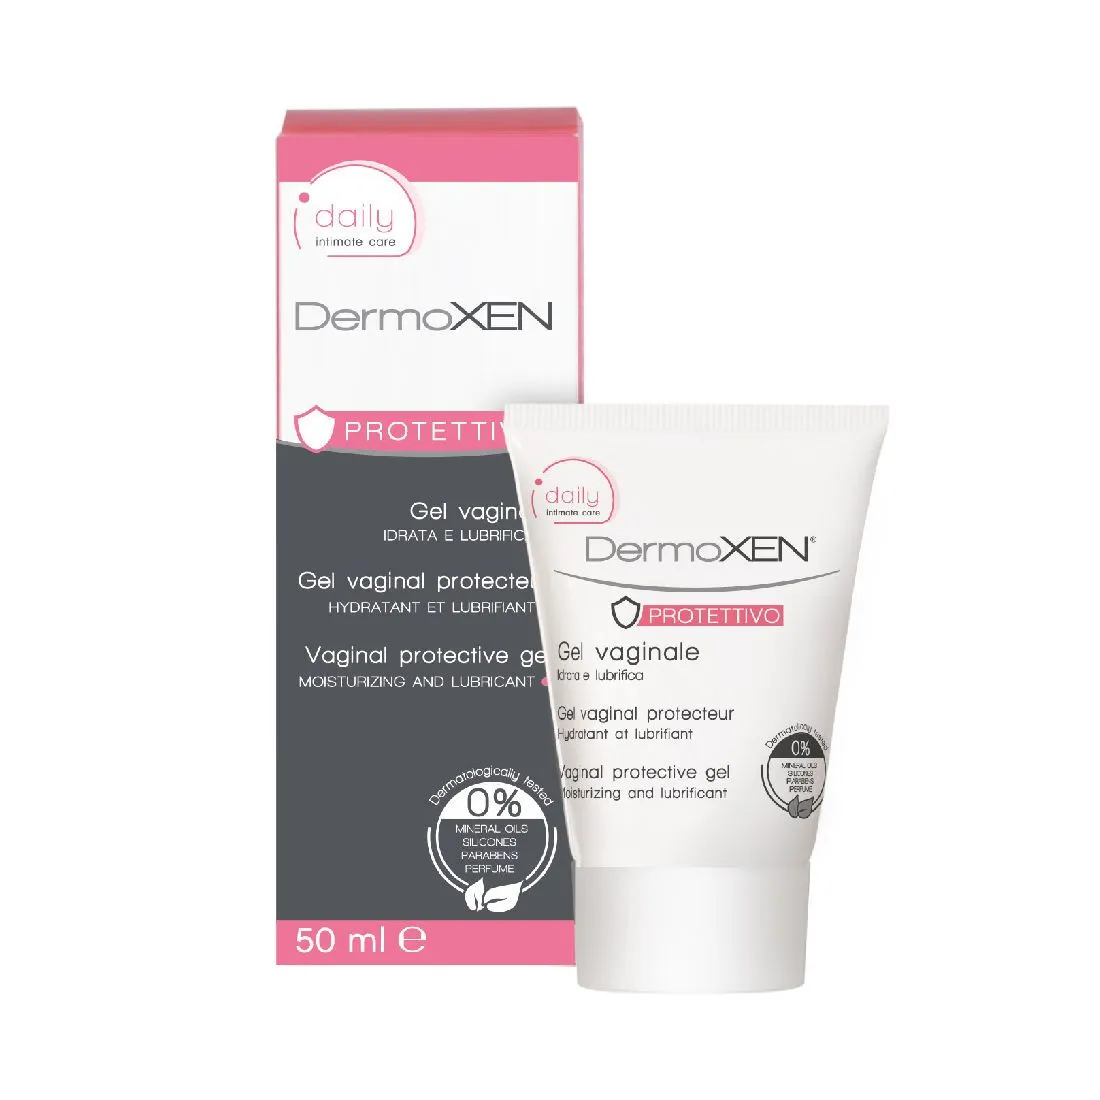 Dermoxen PROTETTIVOintimate moisturizing gel